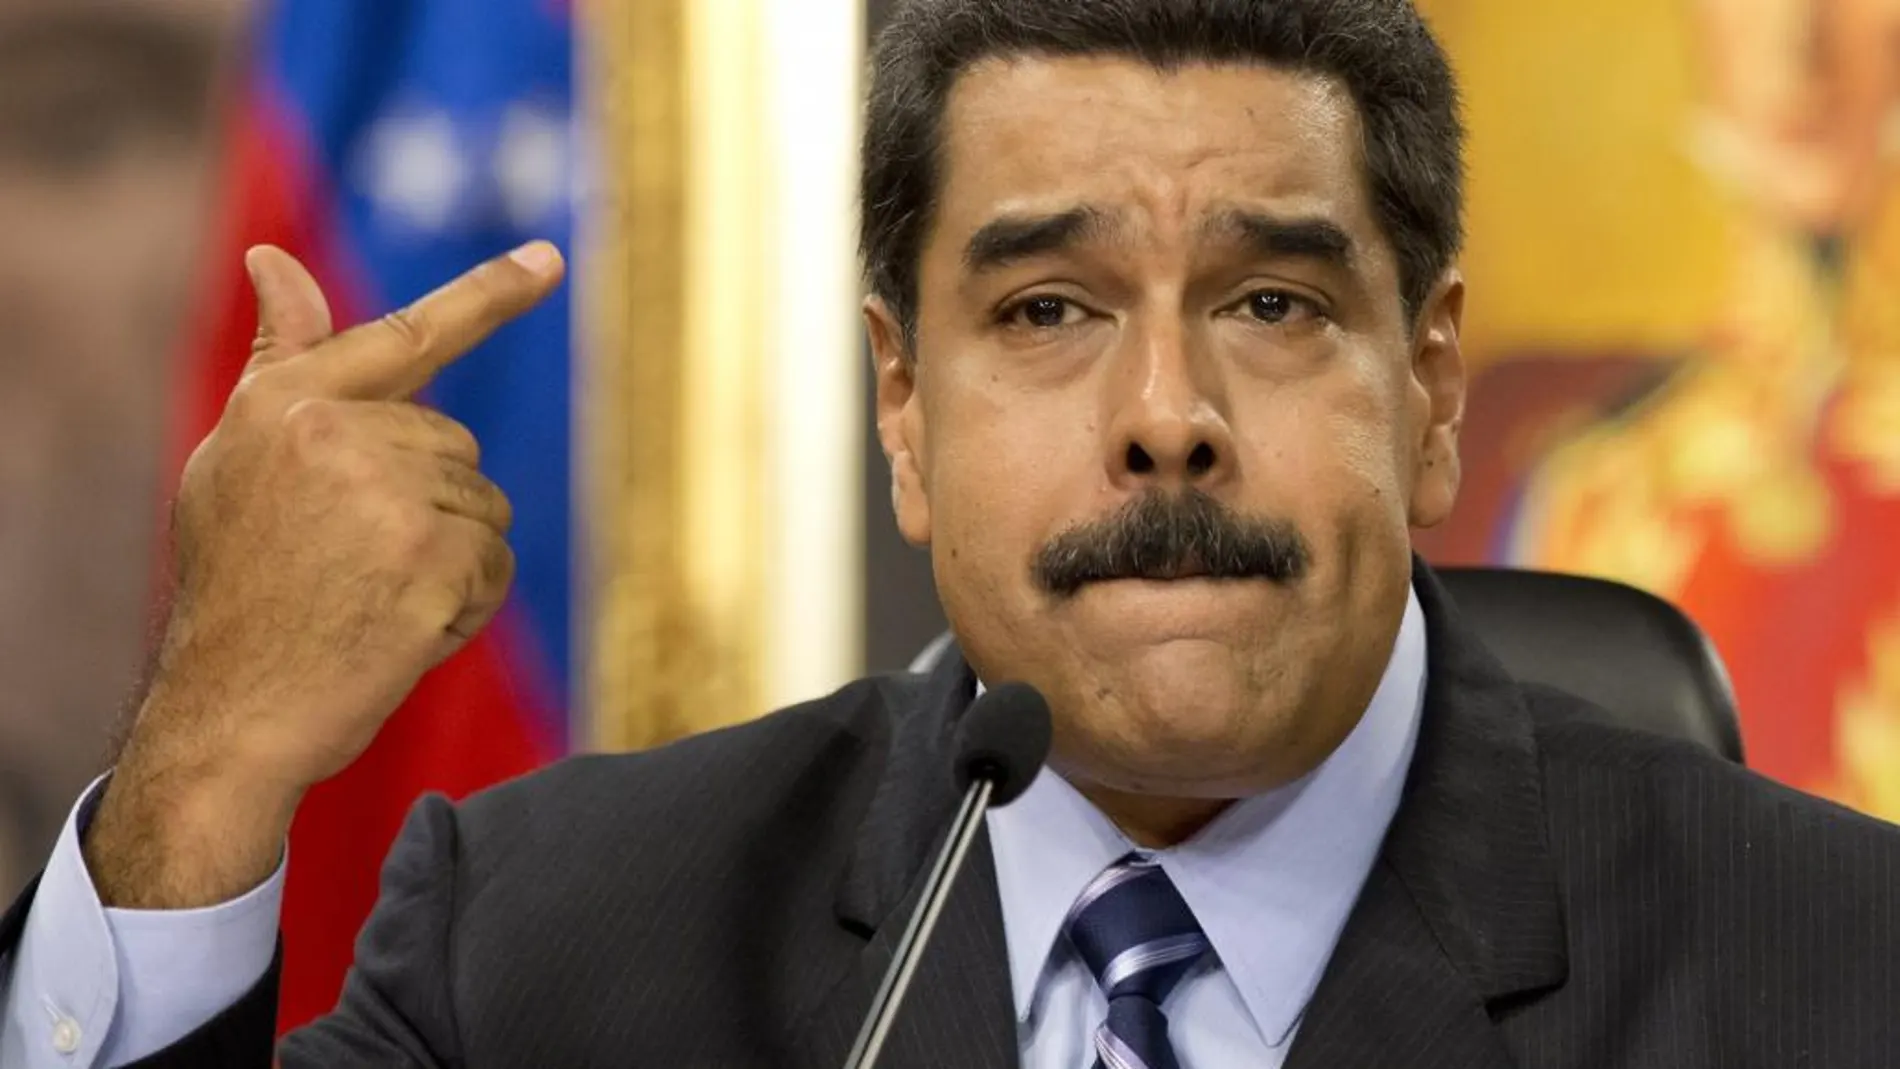 El presidente Nicolás Maduro habla durante una conferencia de prensa hoy en el Palacio de Miraflores.